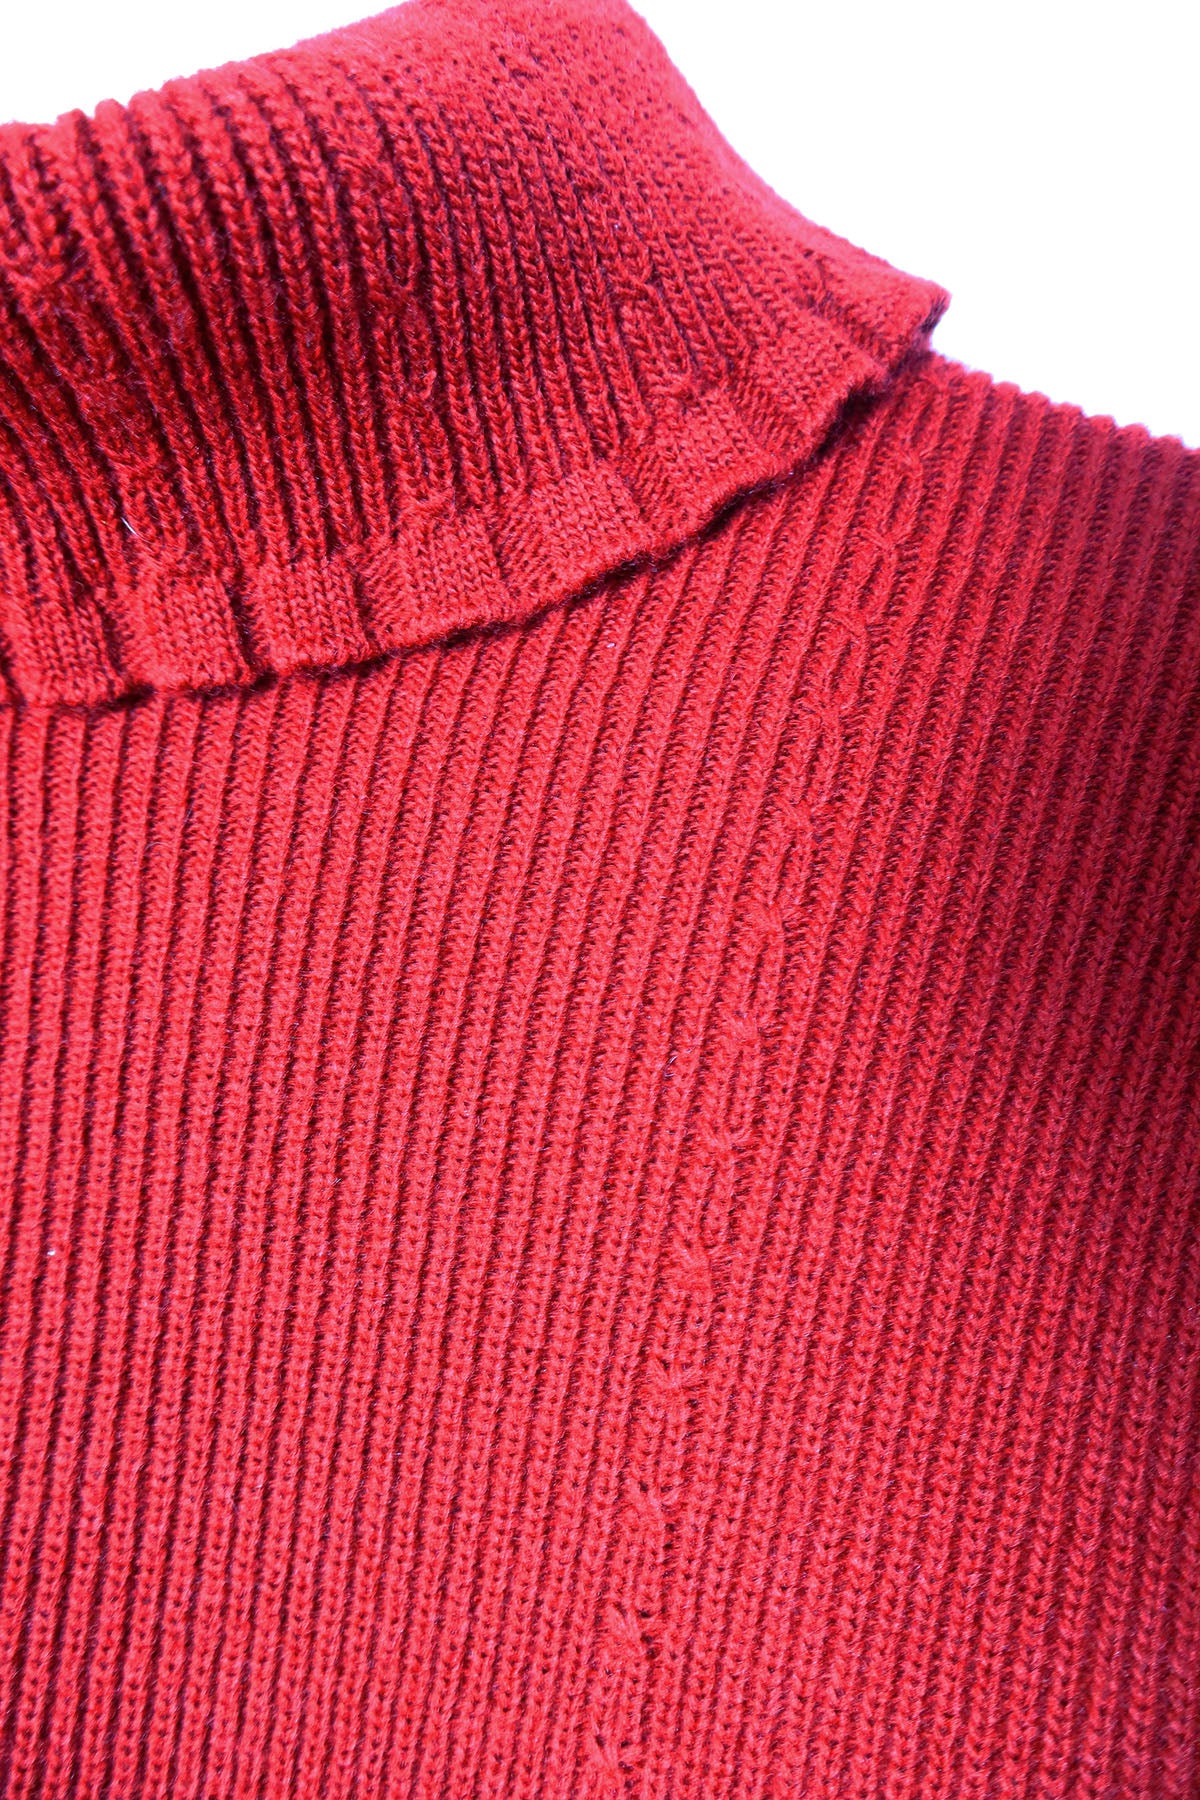 Vintage Turtleneck Knit Pullover